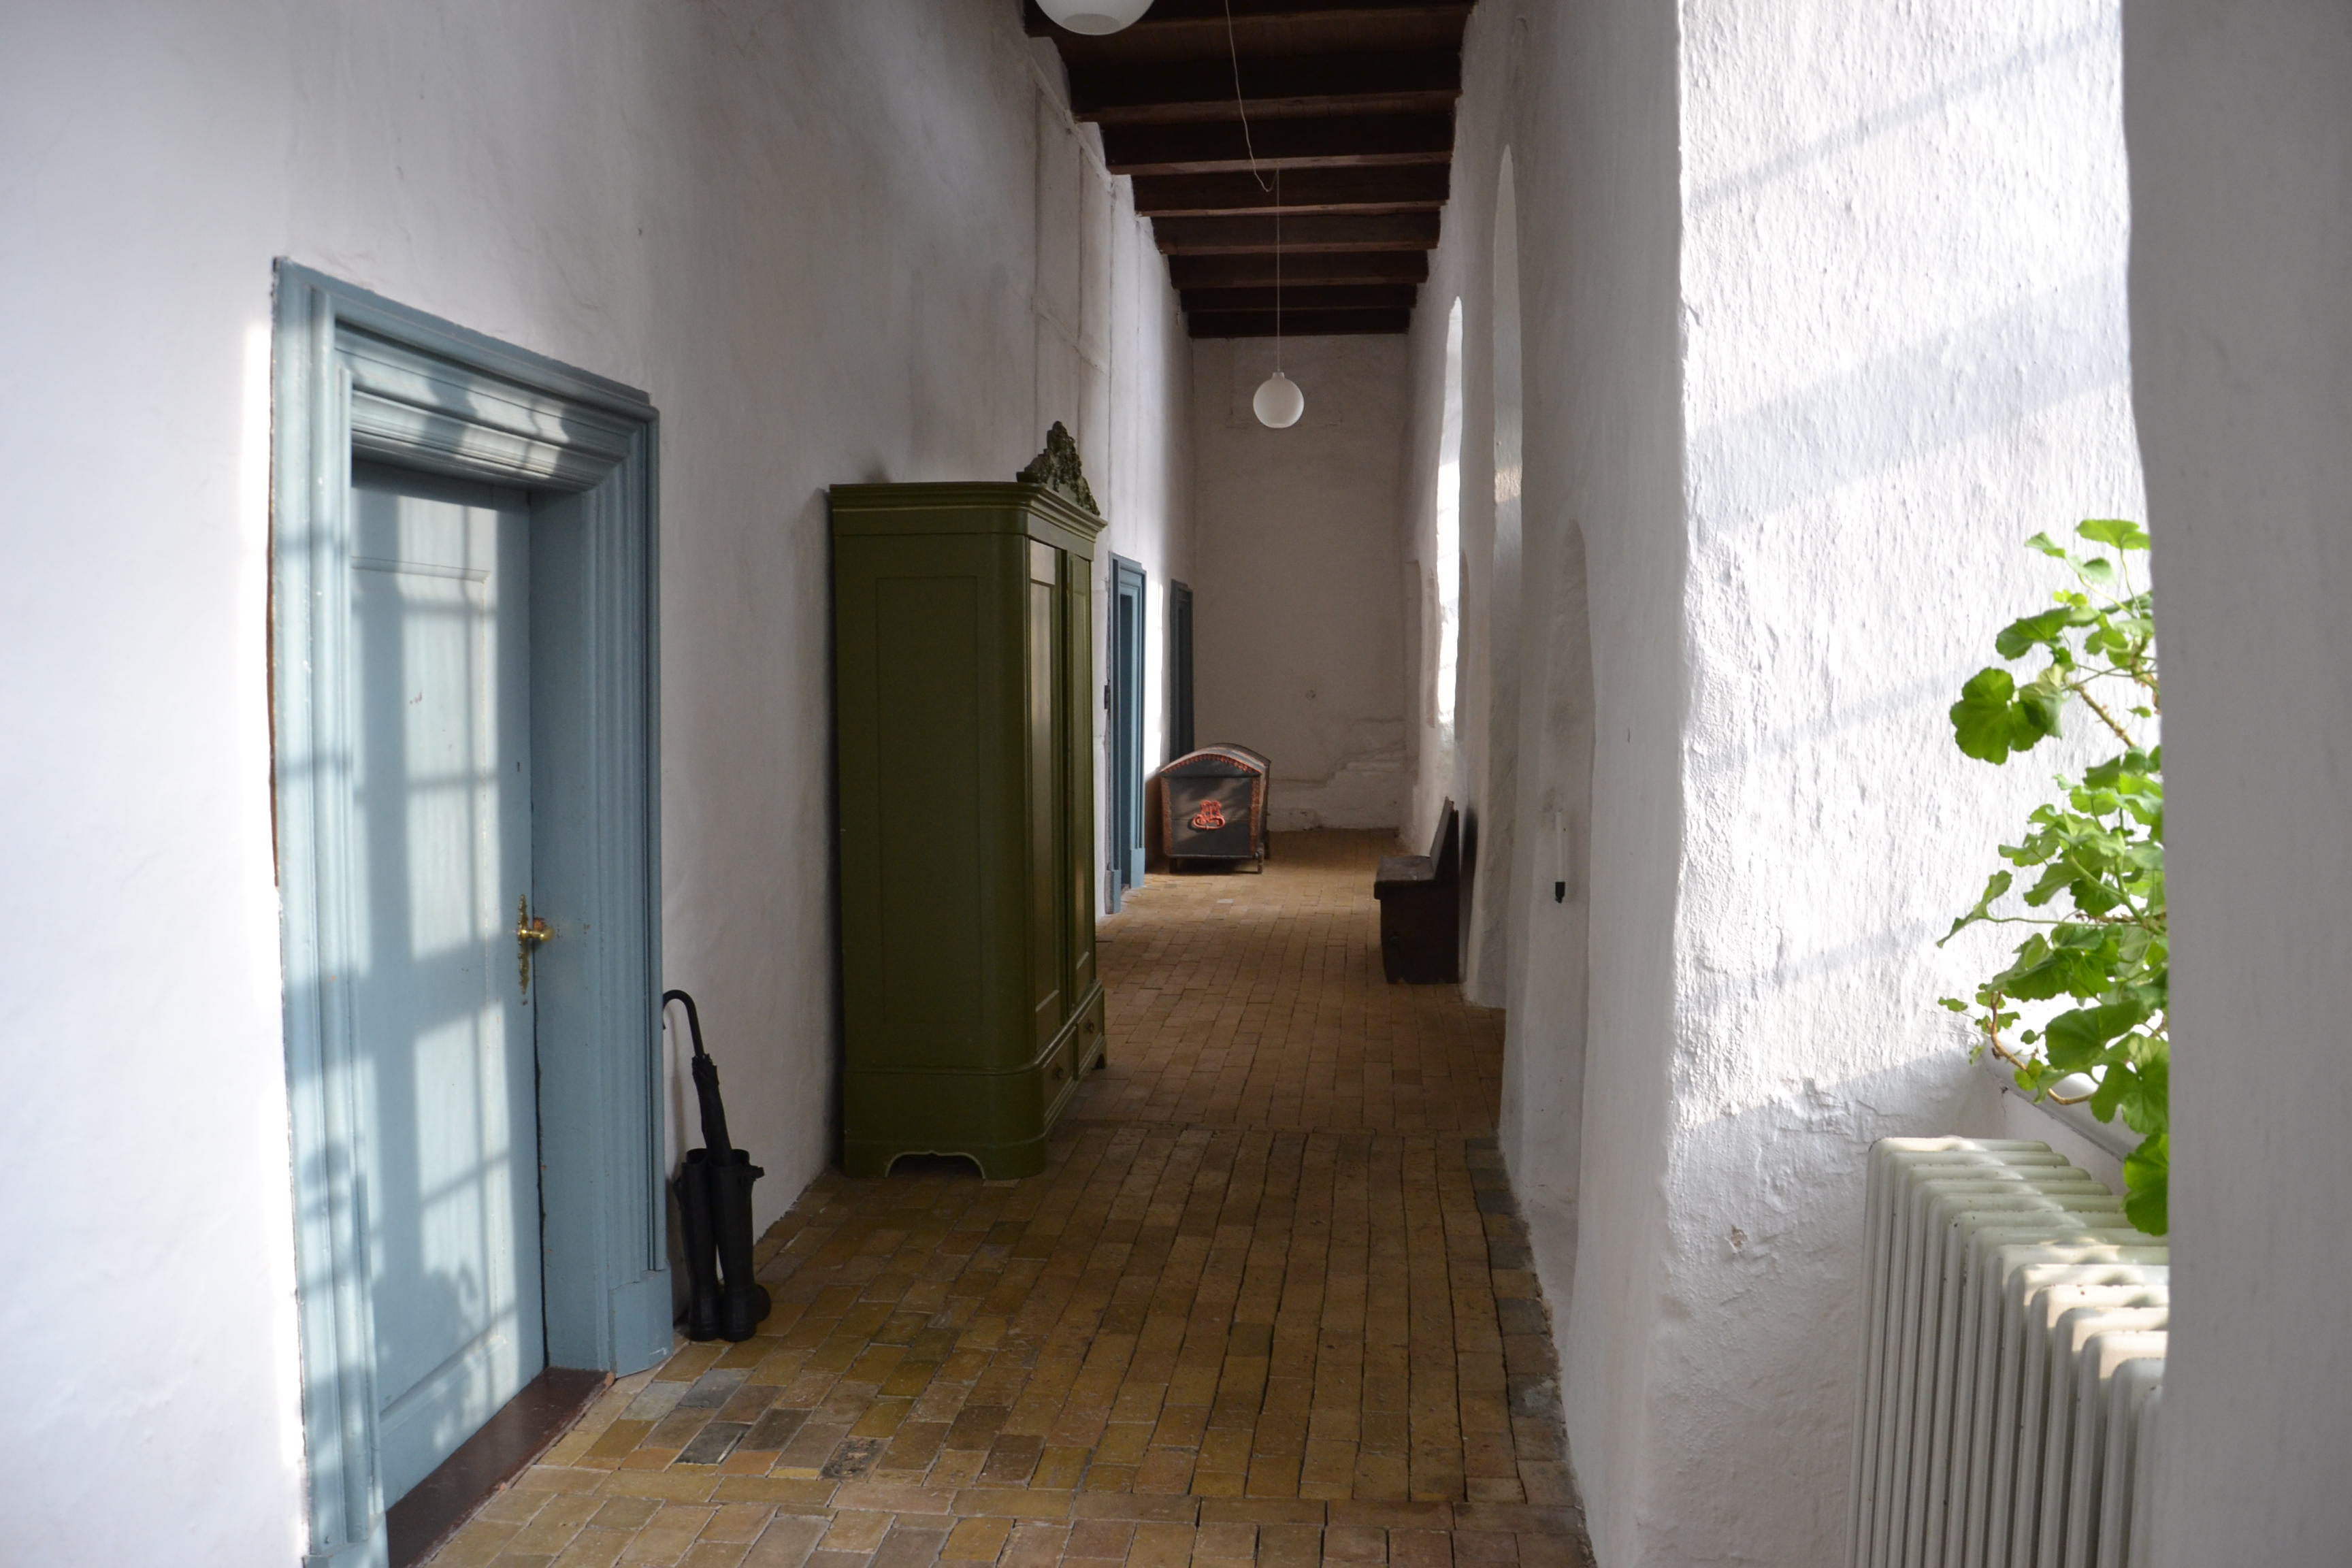 For enden af en af klostrets gange er en tilmuret dør til kirken, som nu genåbnes. Foto: Ørslev Kloster